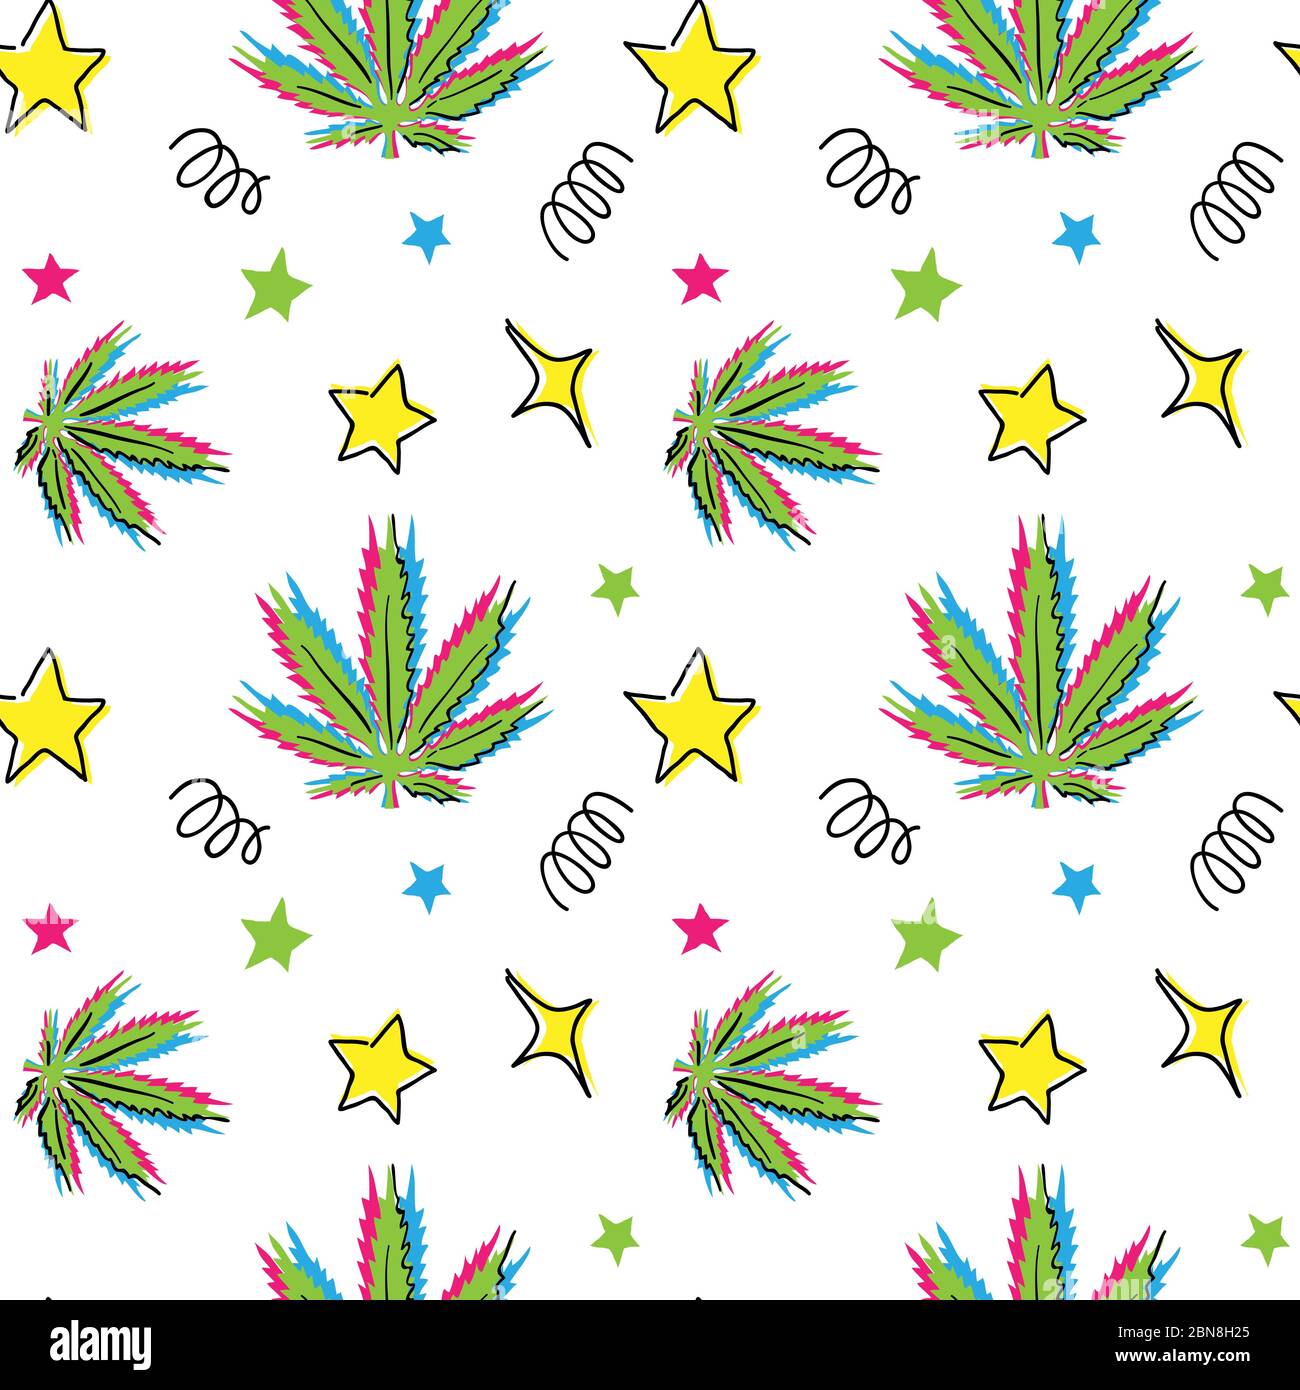 Motif vecteur de feuille de cannabis. Dessin à la main, dessin de coolé, dessin animé avec du cannabis, de la marijuana, du chanvre, de l'herbe dans le dessin de memphis Illustration de Vecteur